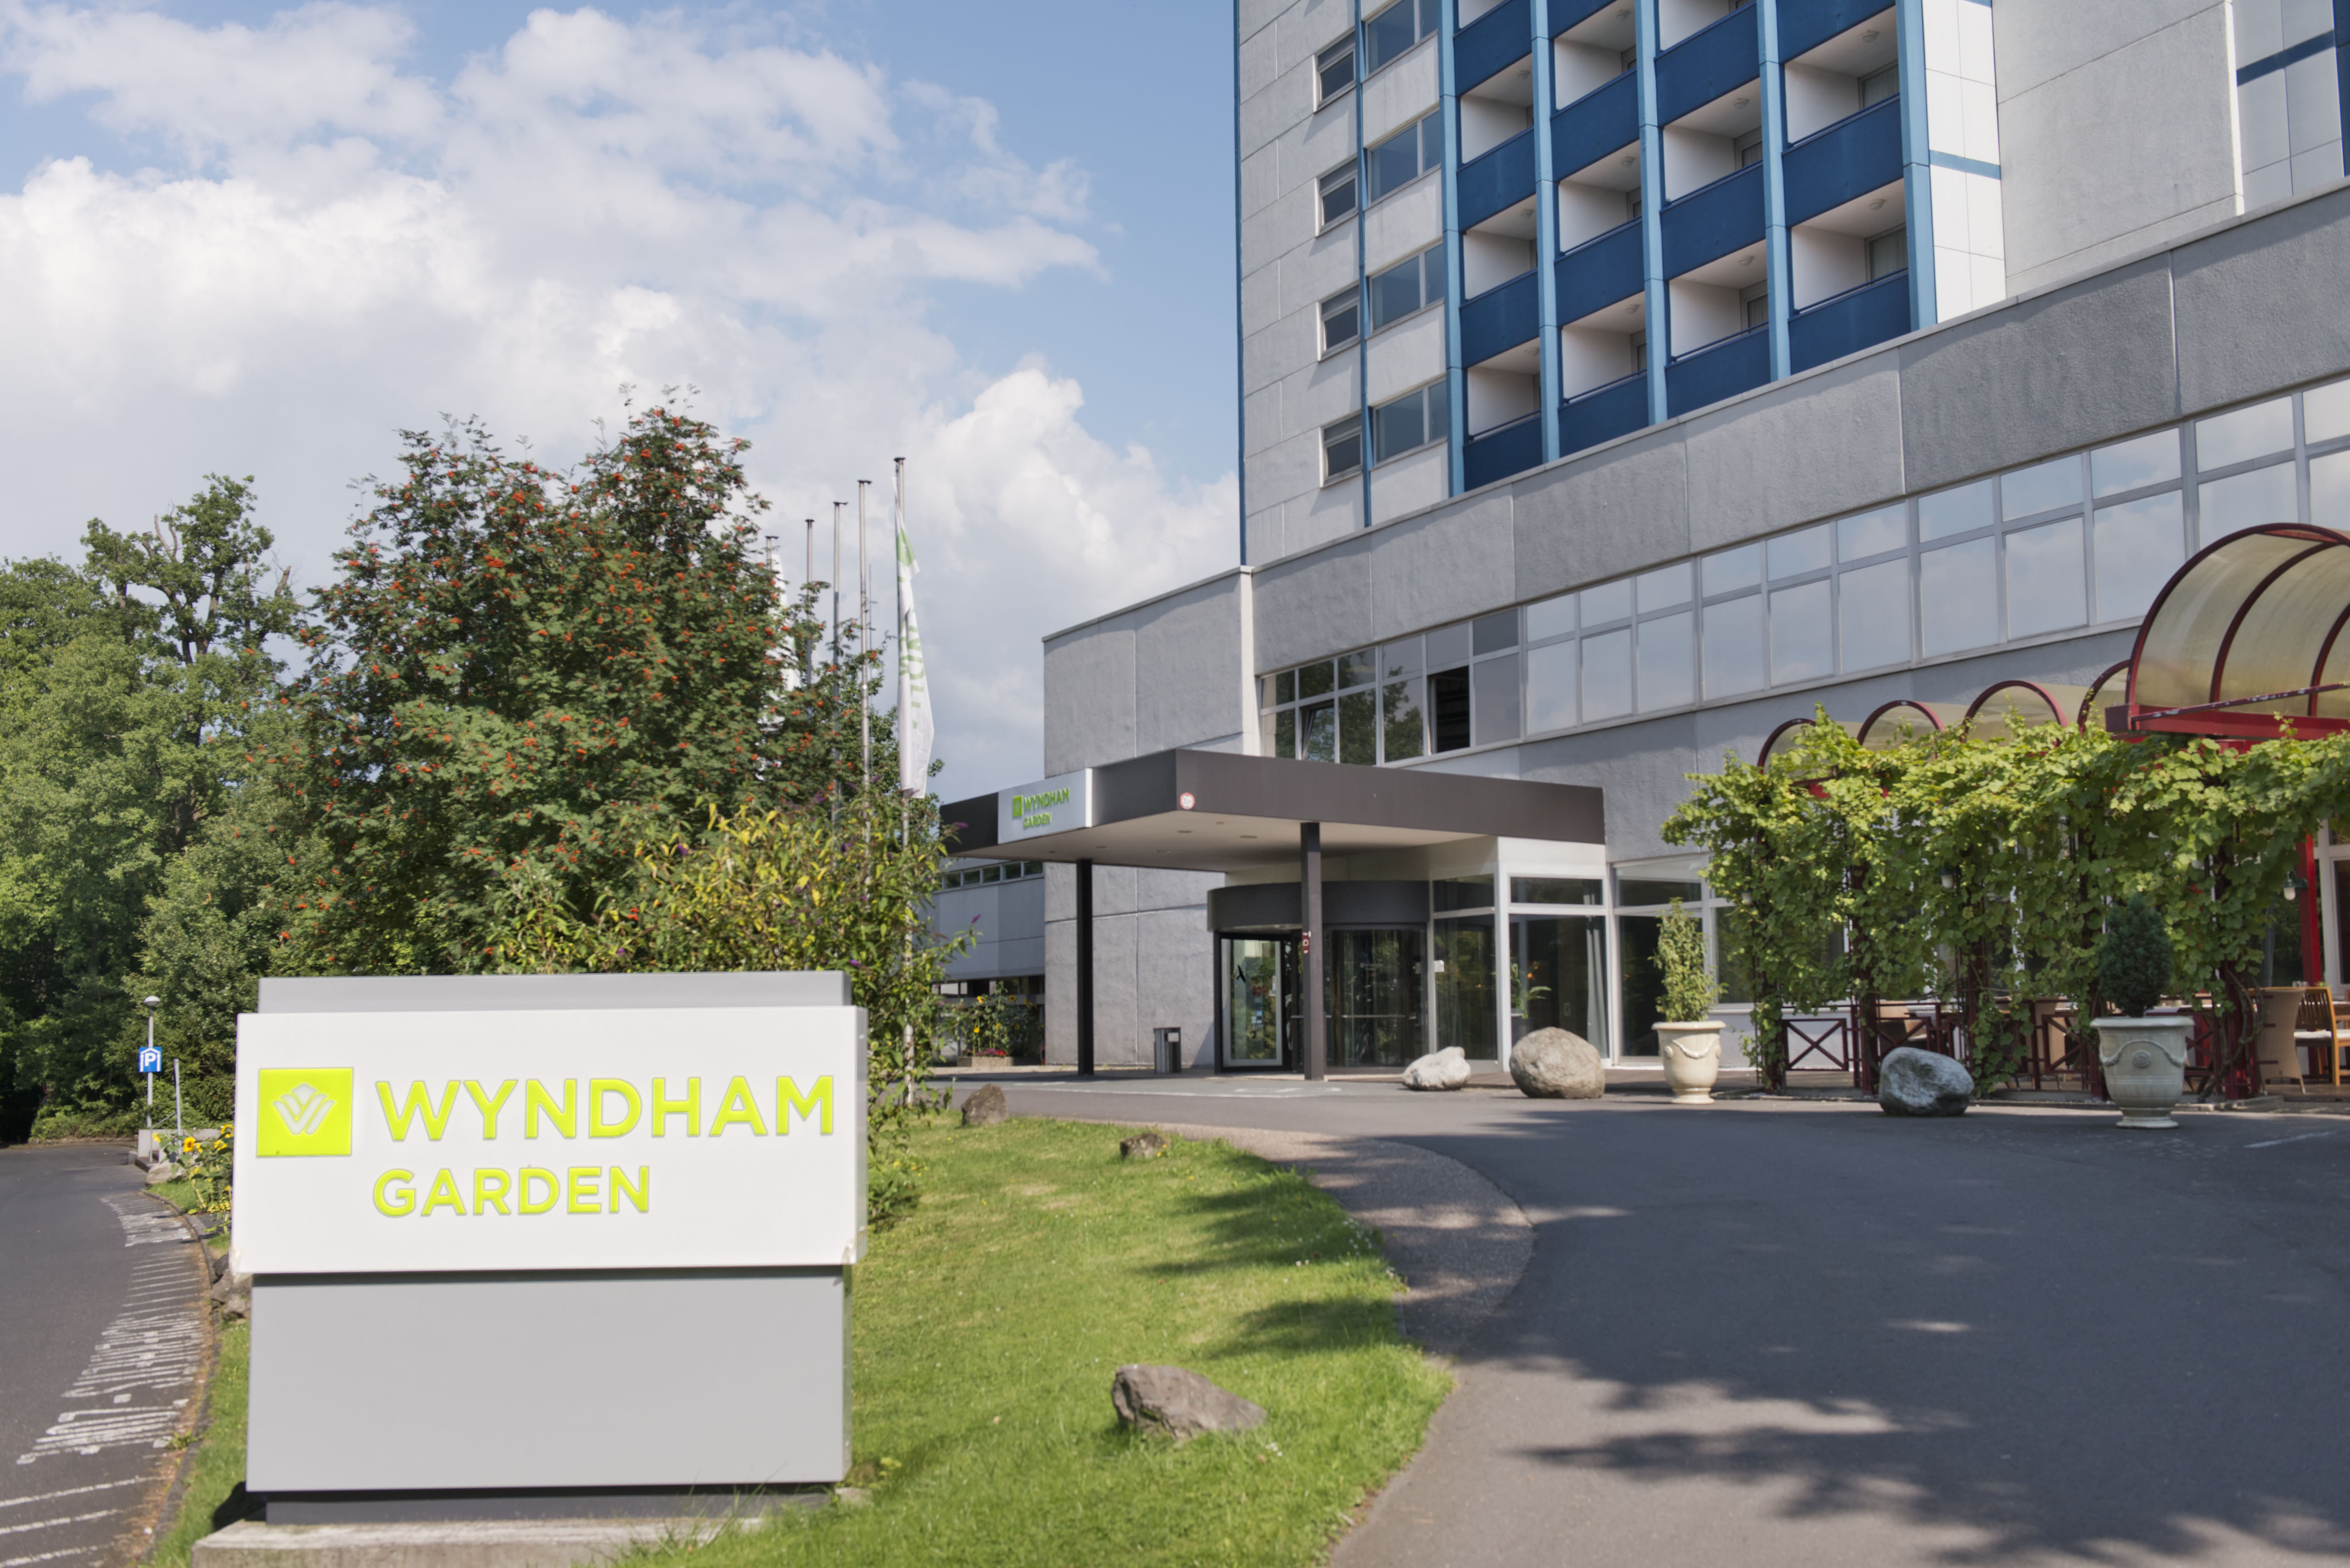 Wichtige Information: Anfahrt für Seminare in Lahnstein (Wyndham Garden Hotel)